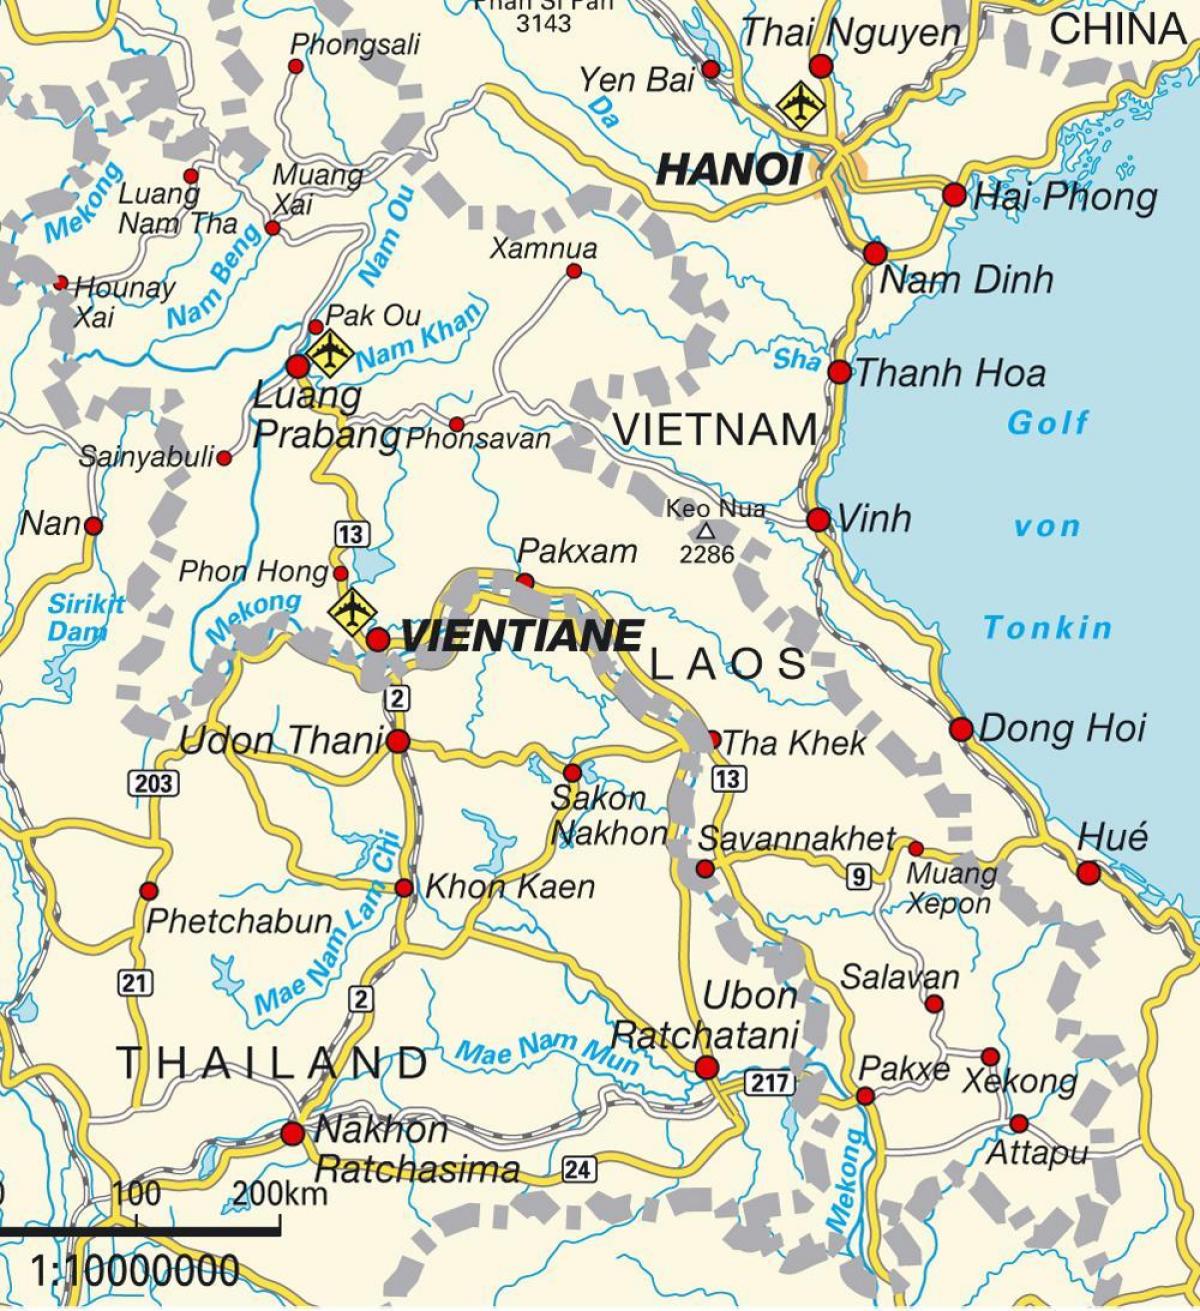 فرودگاه ها در لائوس در نقشه